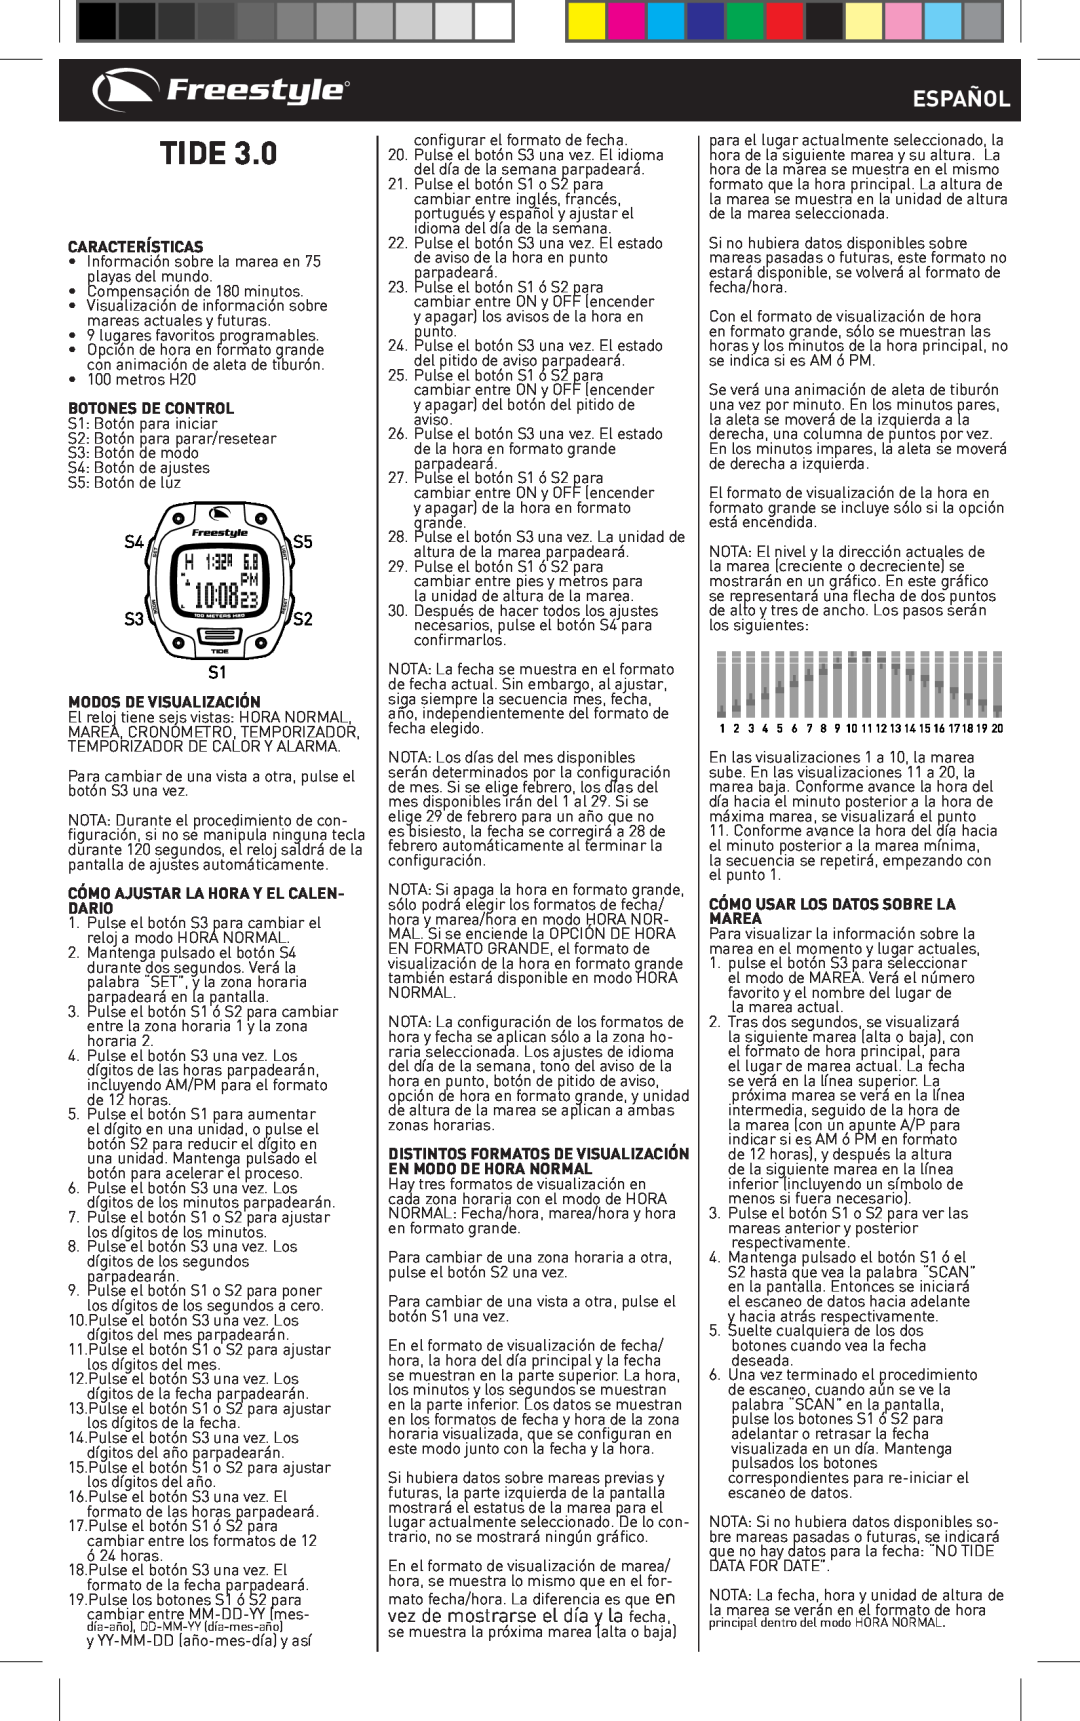 Freestyle TIDE 3.0 manual Español, Características, Botones De Control, Modos De Visualización, Tide 